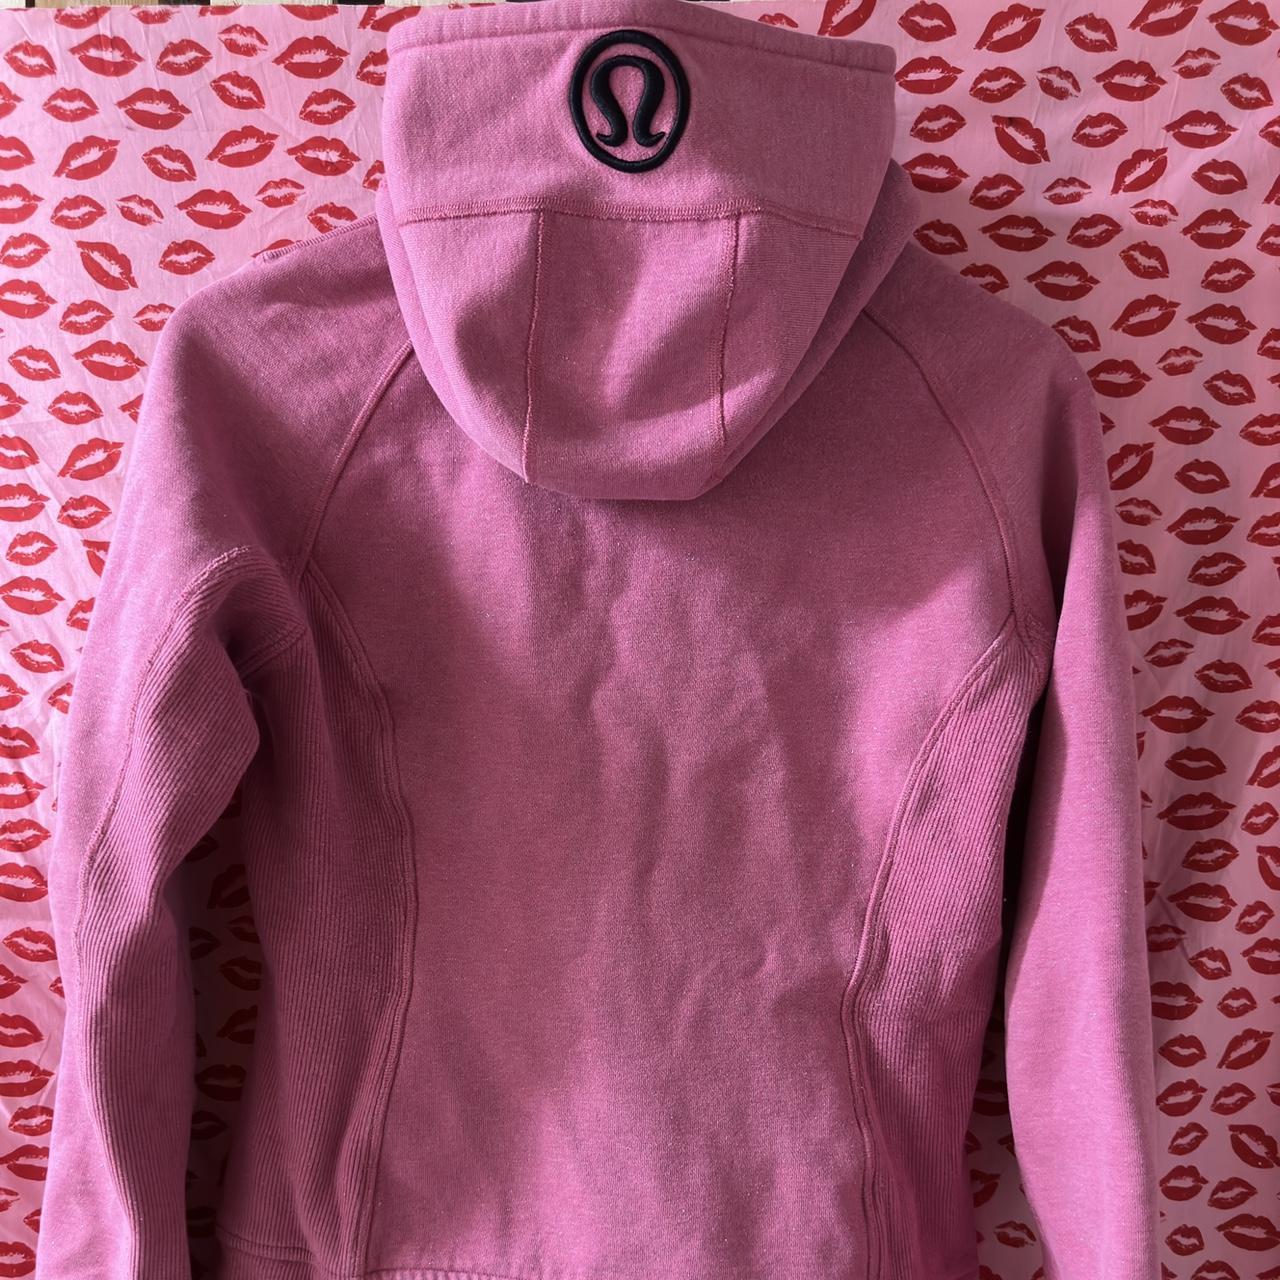 Lululemon Pink Scuba Hoodie Sweatshirt- Size 6